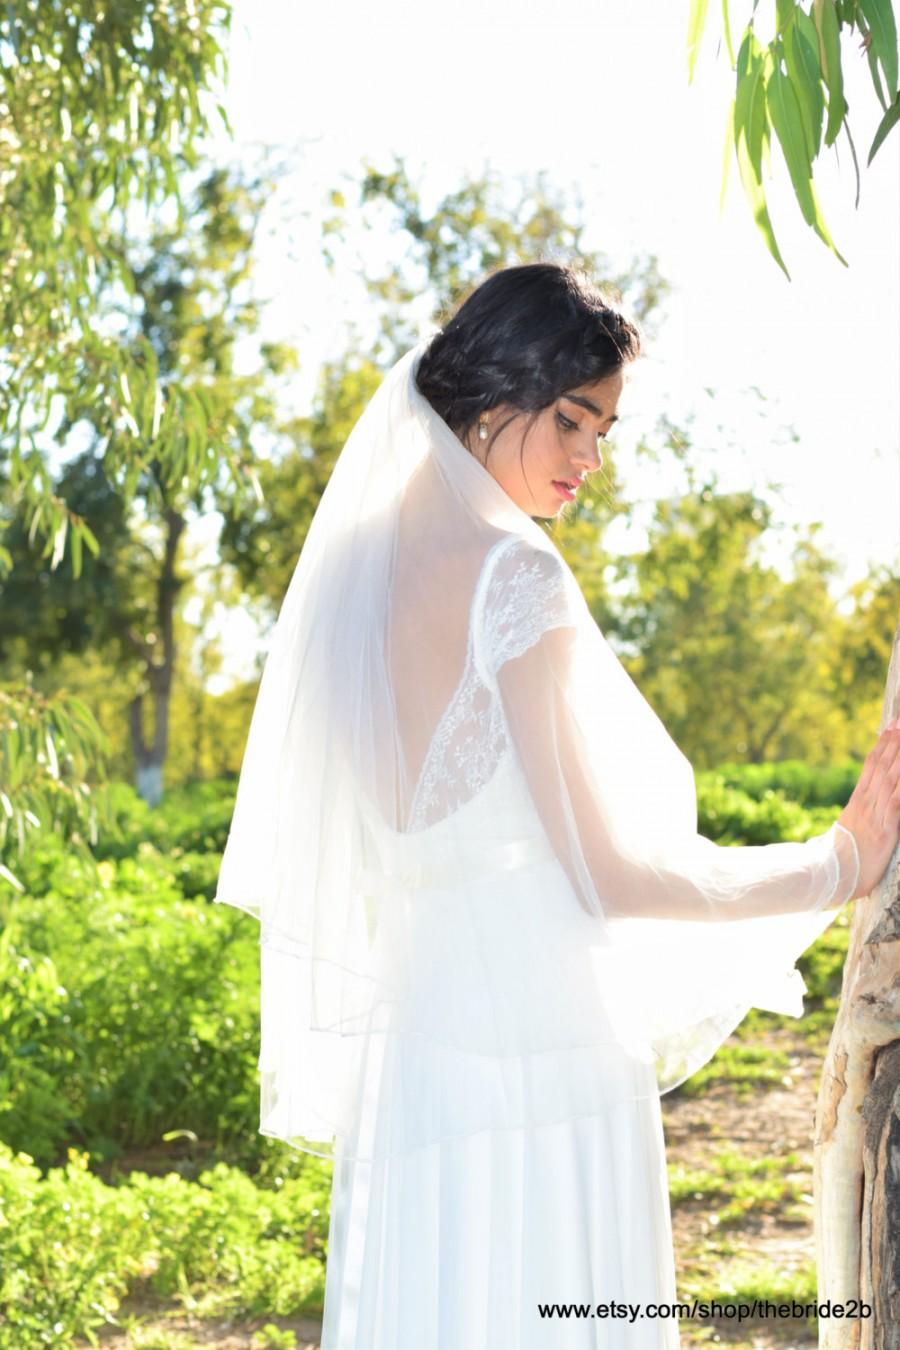 زفاف - Wedding Bridal Veil, wedding veil, Bride Veil, ivory white bridal veil Fingertip length Wedding Bridal Veil white, ivory,